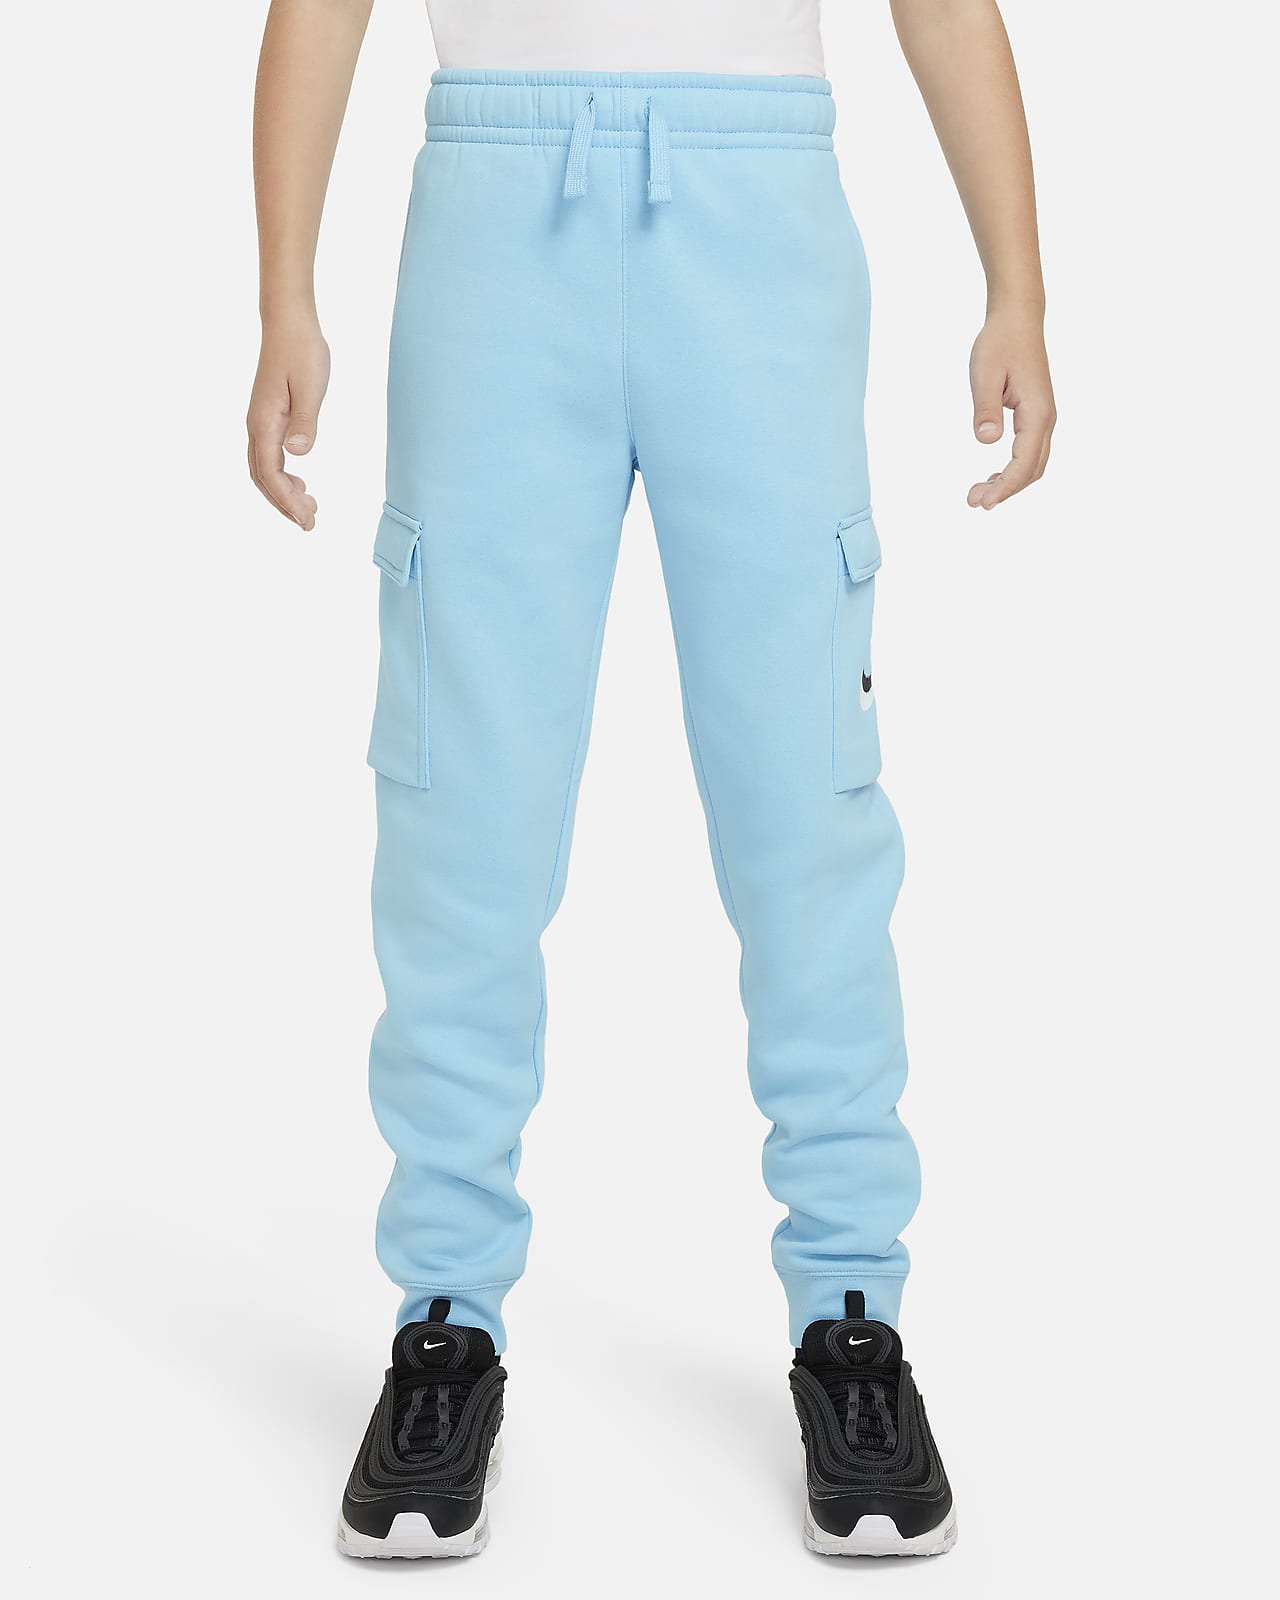 Pantalon cargo graphique en tissu Fleece Nike Sportswear pour ado (garçon)